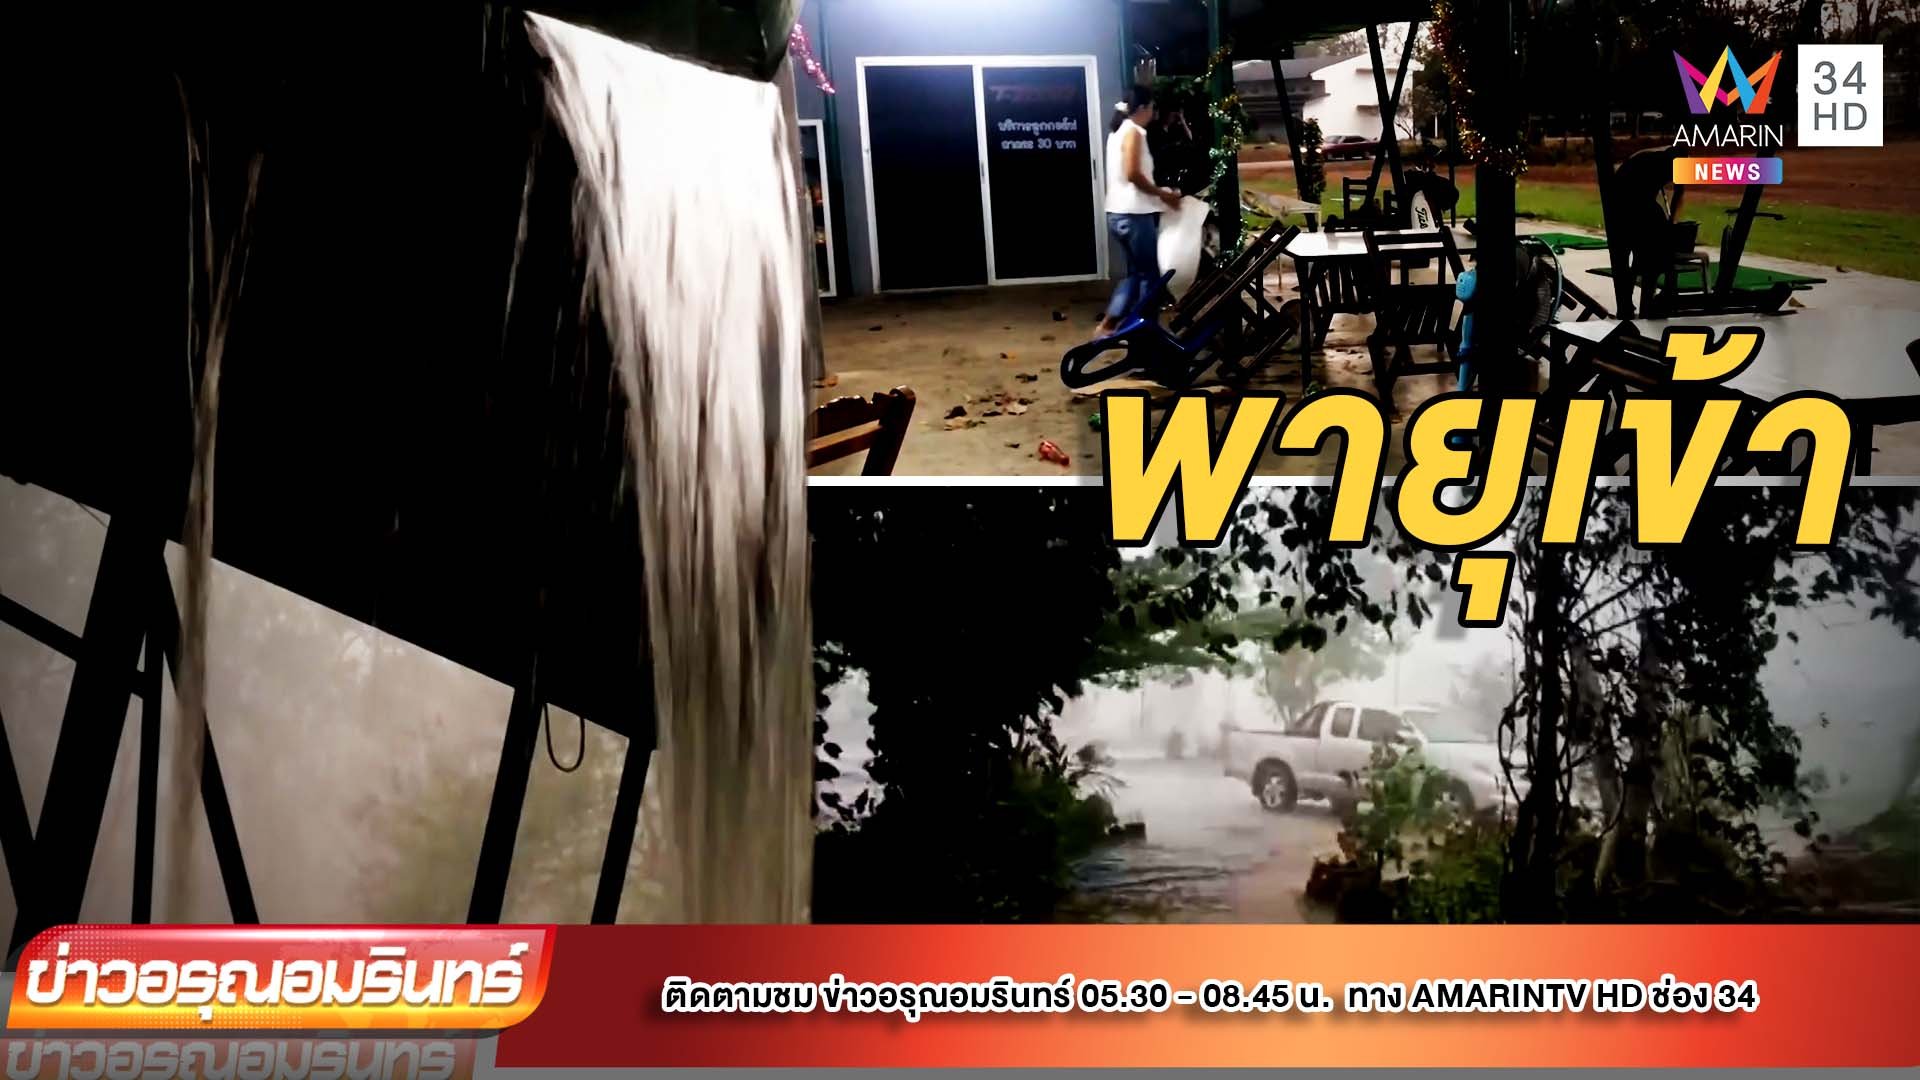 พายุฝน-ลูกเห็บถล่มภาคเหนือ ซัดเรือนักท่องเที่ยวจมกว๊านพะเยา | ข่าวอรุณอมรินทร์ | 18 มี.ค. 65 | AMARIN TVHD34